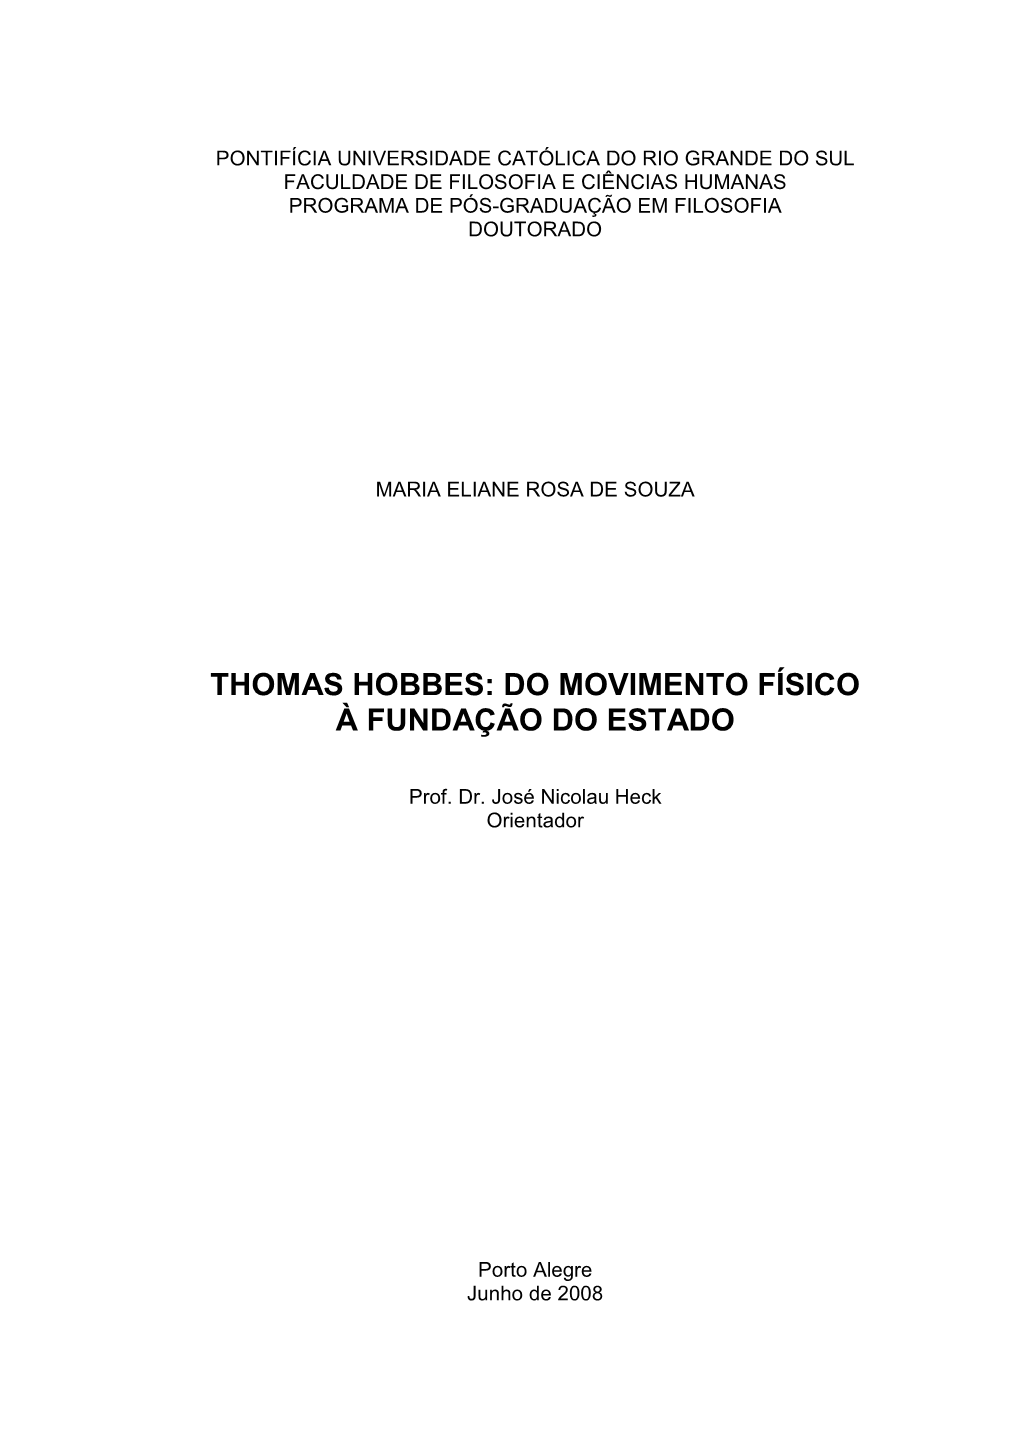 Thomas Hobbes: Do Movimento Físico À Fundação Do Estado